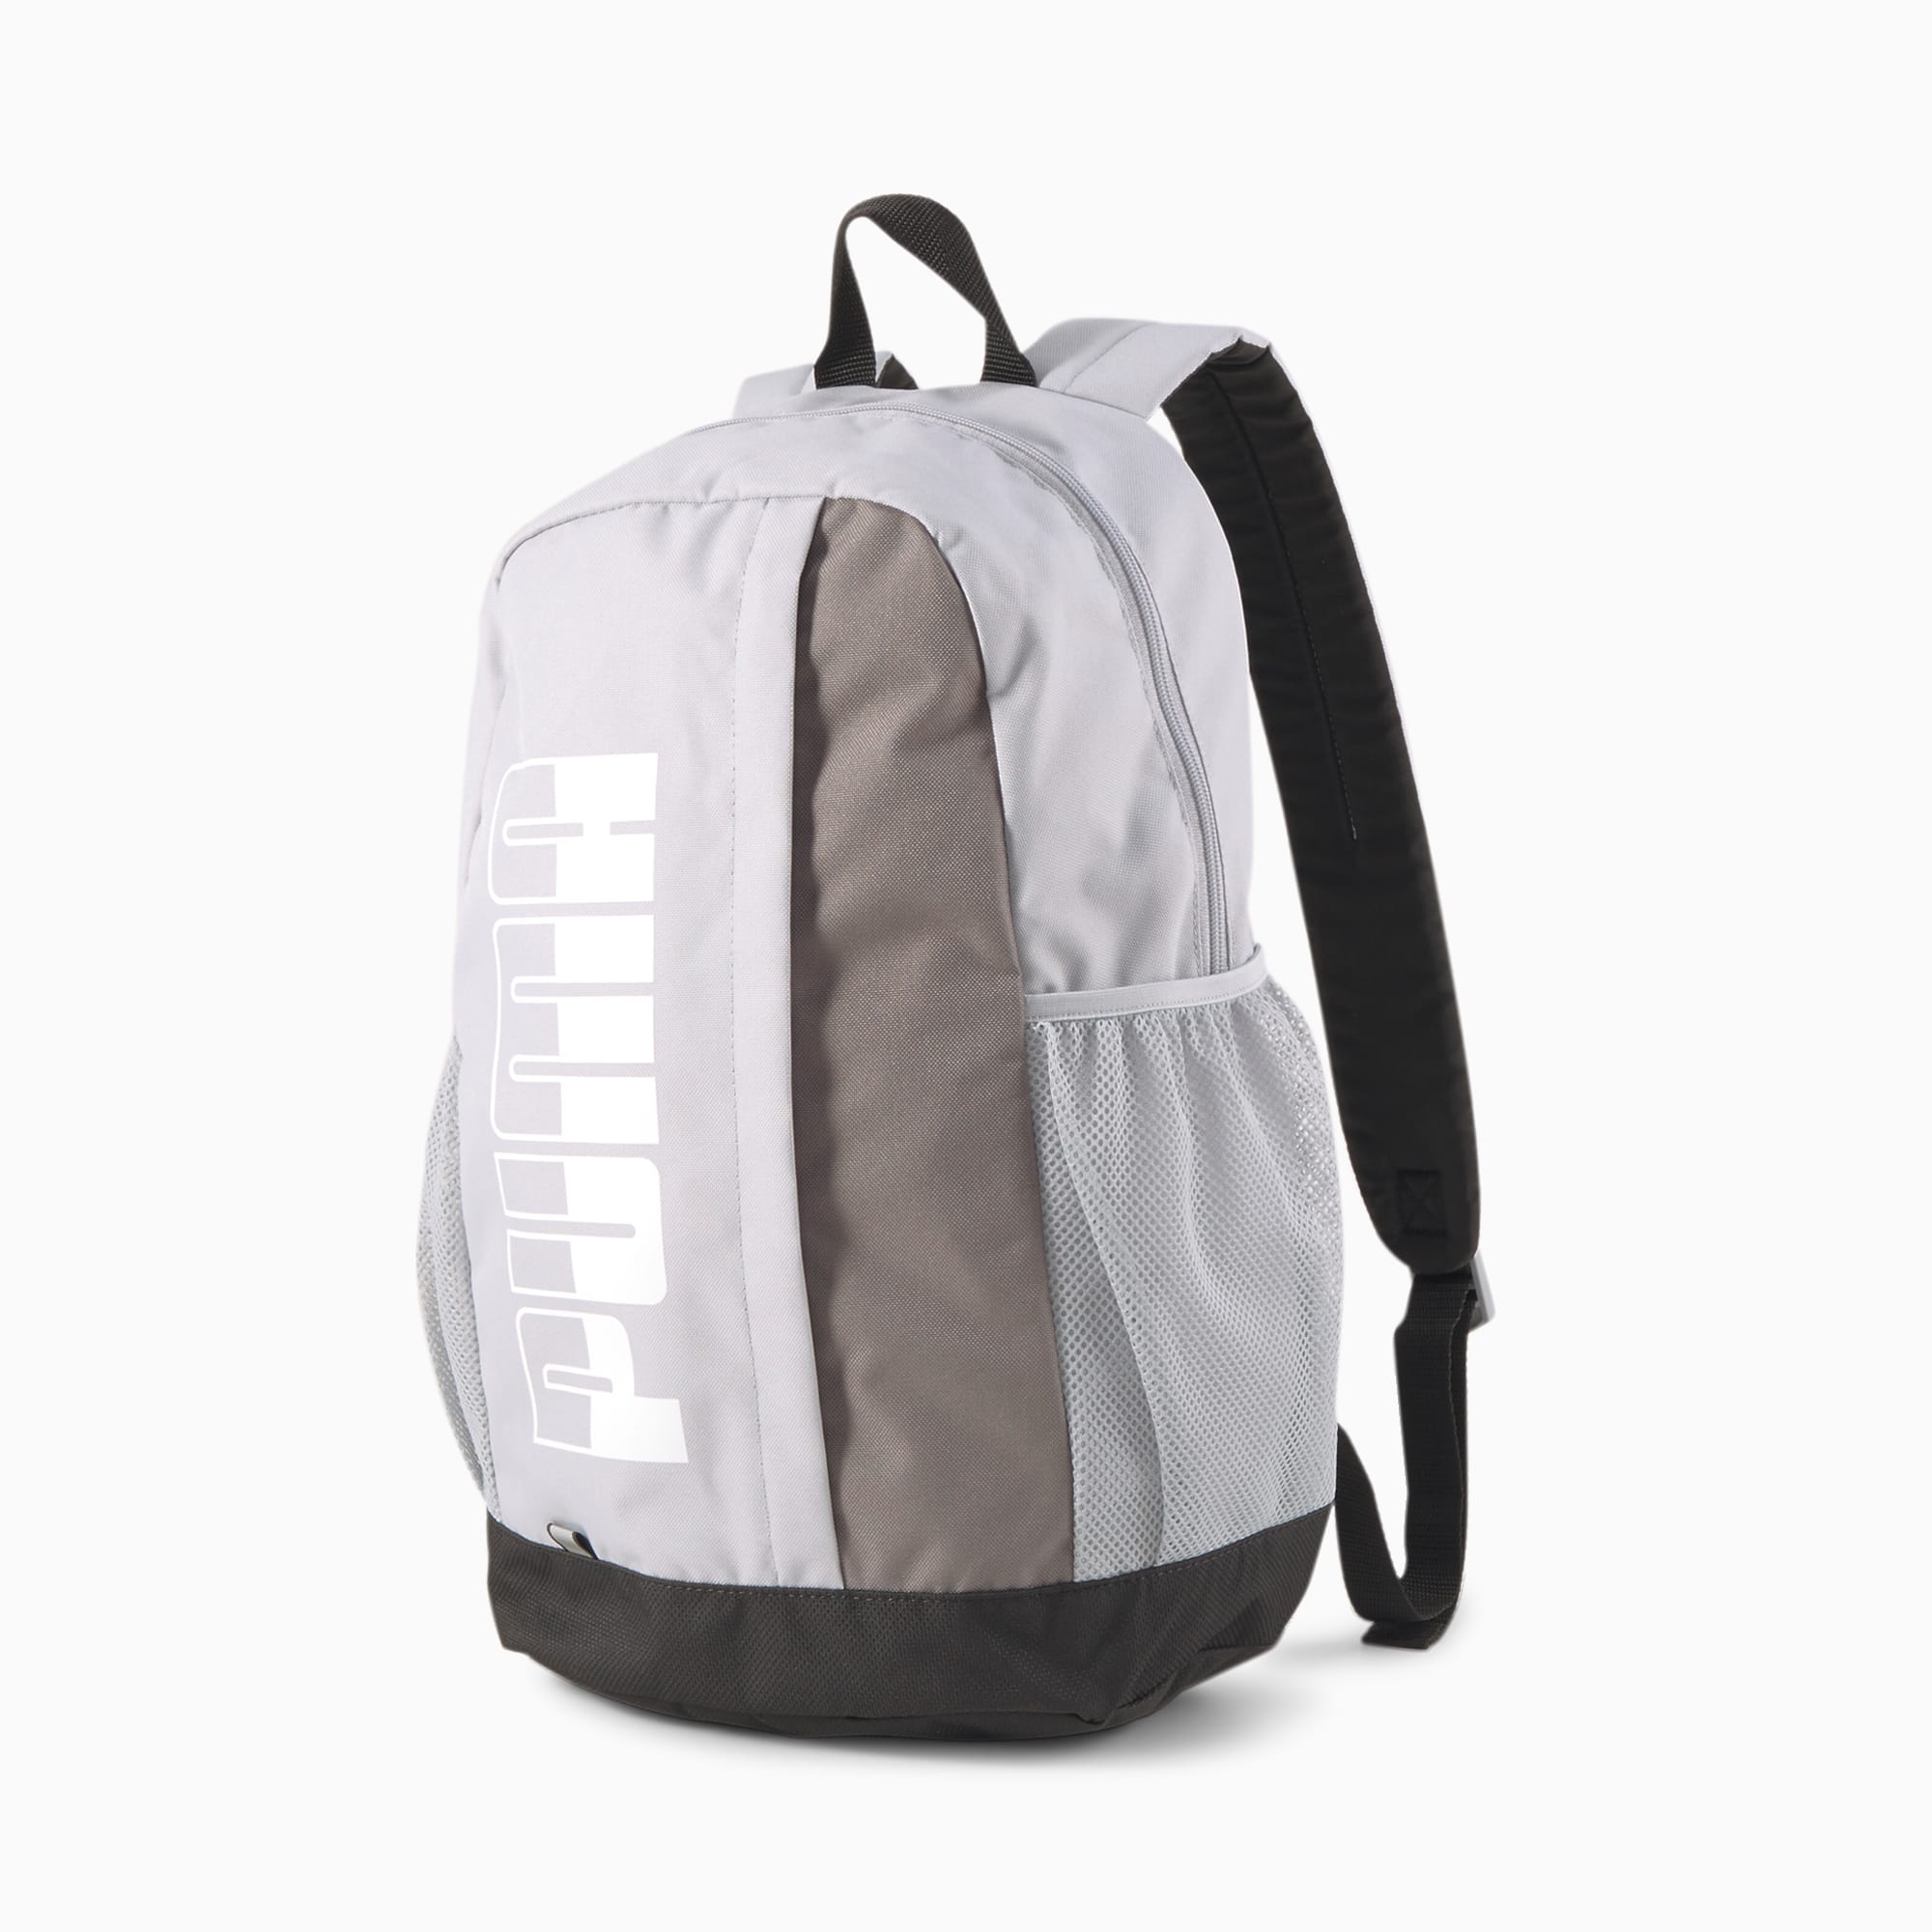 Plus II Backpack, High Rise, large-SEA